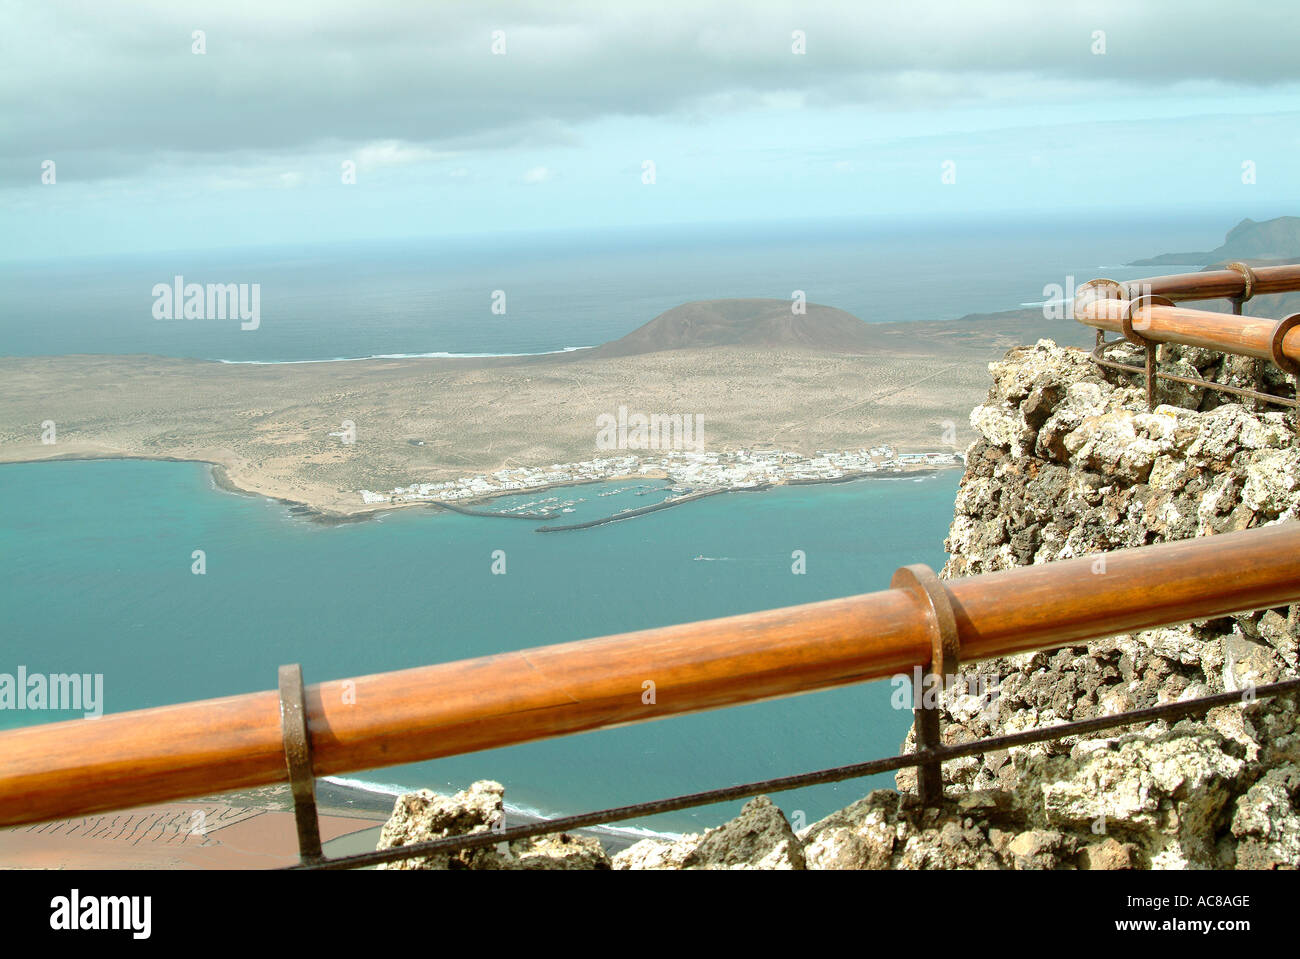 Mirador del Rio canary islands Lanzarote Aussichtspunkt Mirador del Rio Stock Photo